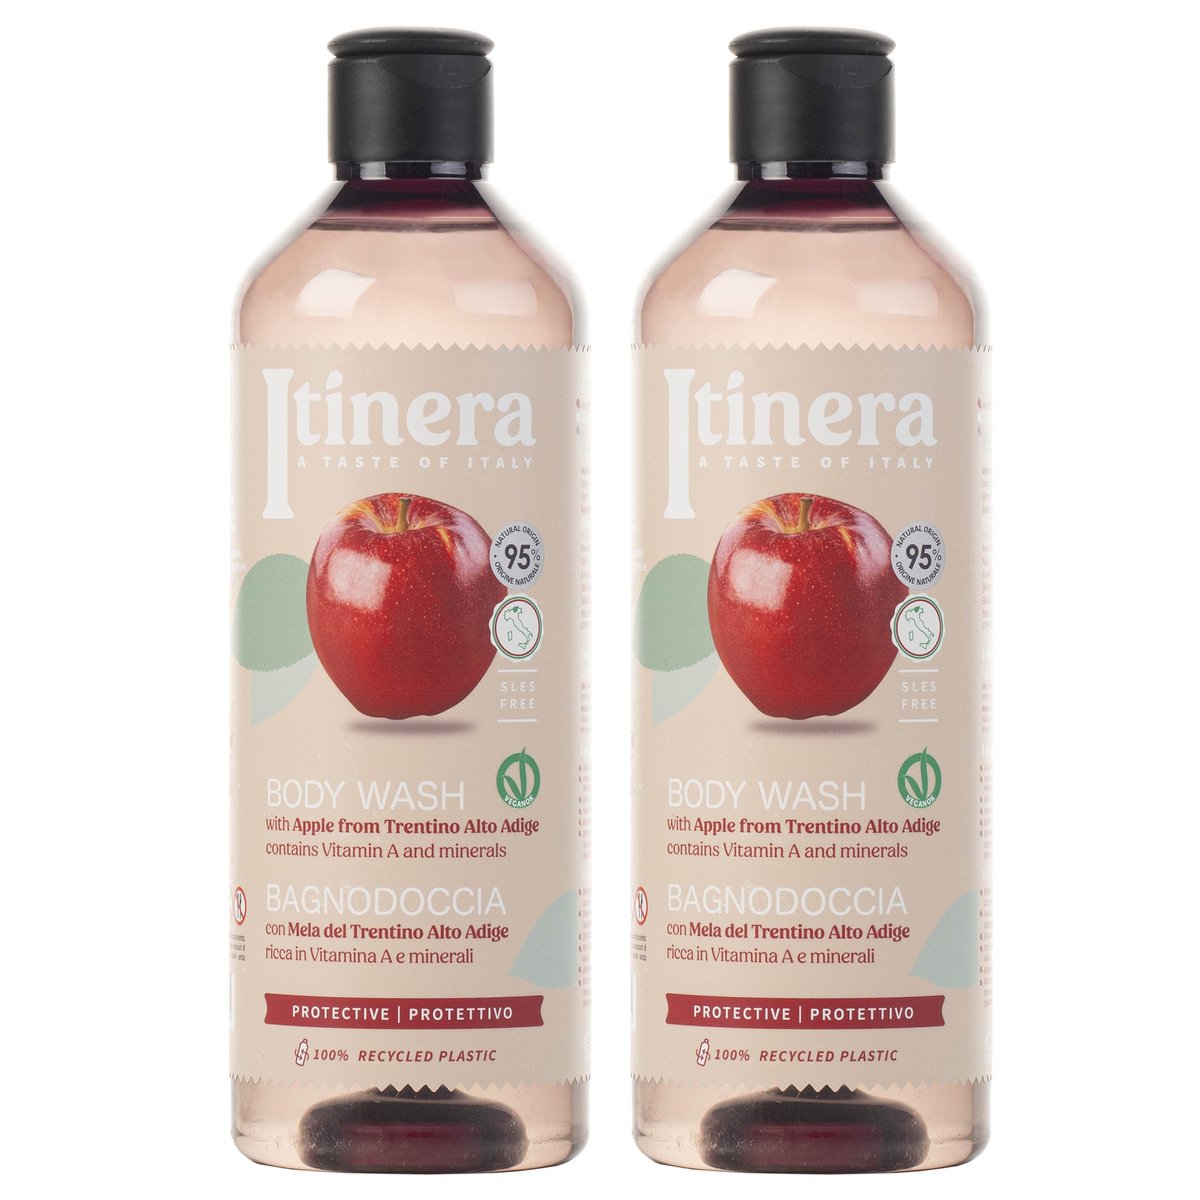 ITINERA Ochronny żel pod prysznic jabłko z Trentino, 95% naturalnych składników, 370 ml 2 szt